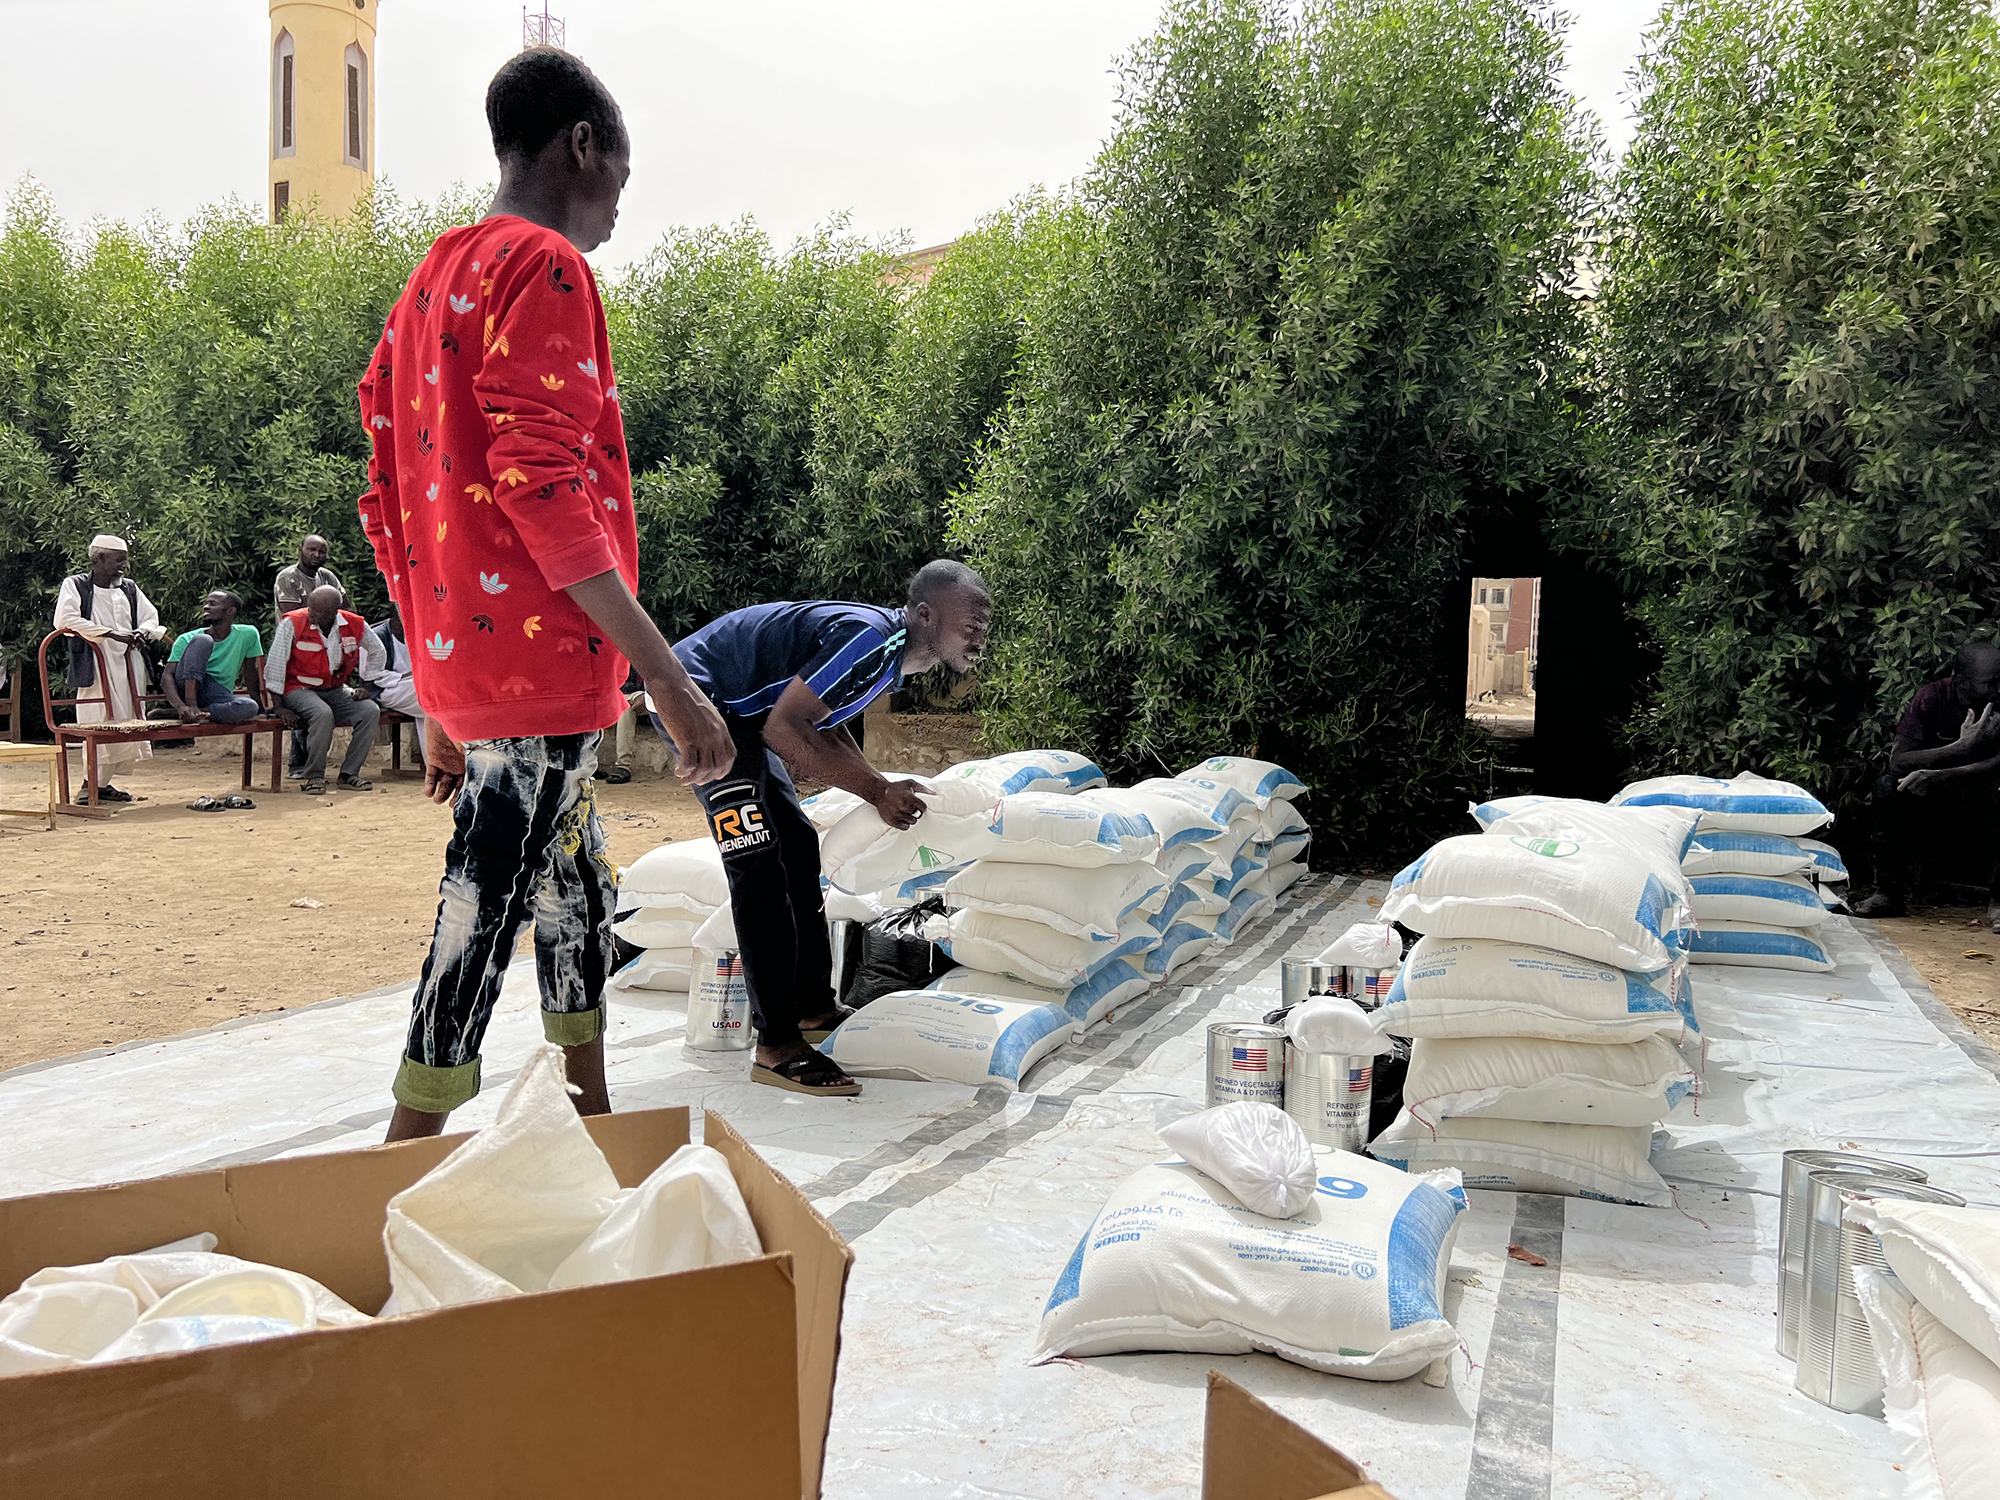 V Port Súdánu se nouzově rozdávají potravinové balíčky lidem prchajícím před bojem v Chartúmu.